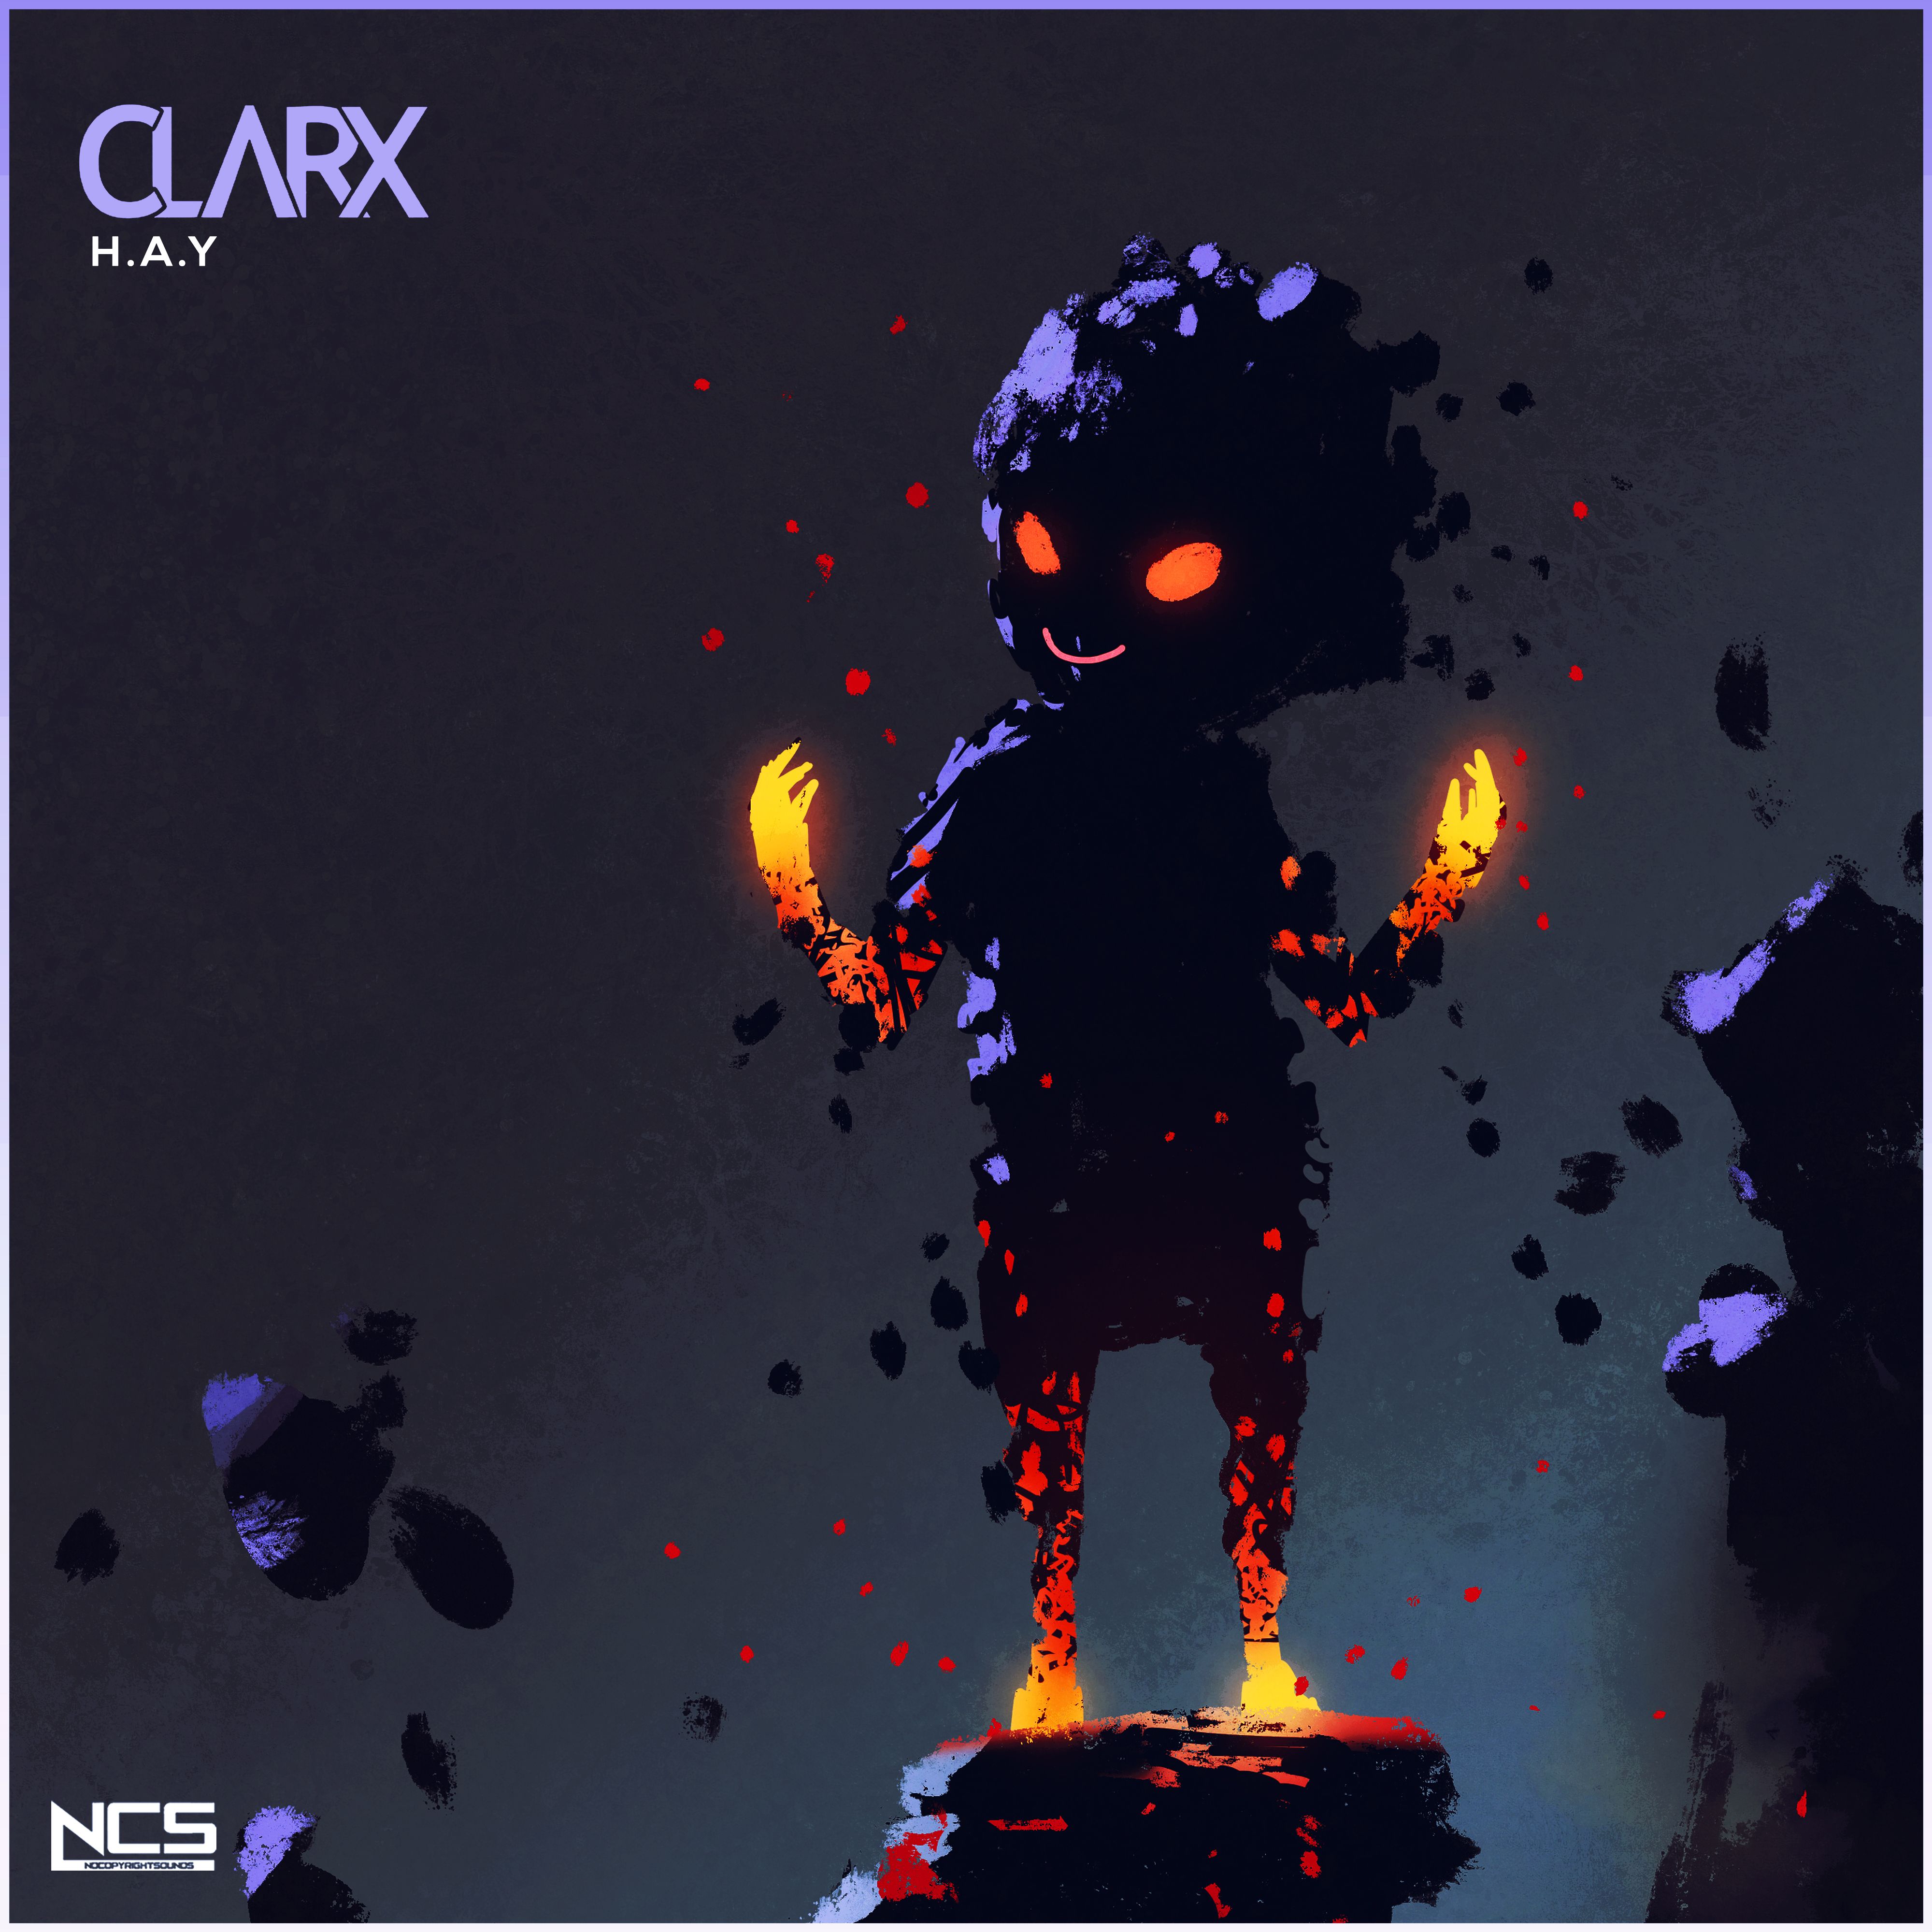 ഡൗൺലോഡ് Clarx - H.A.Y [NCS Release]